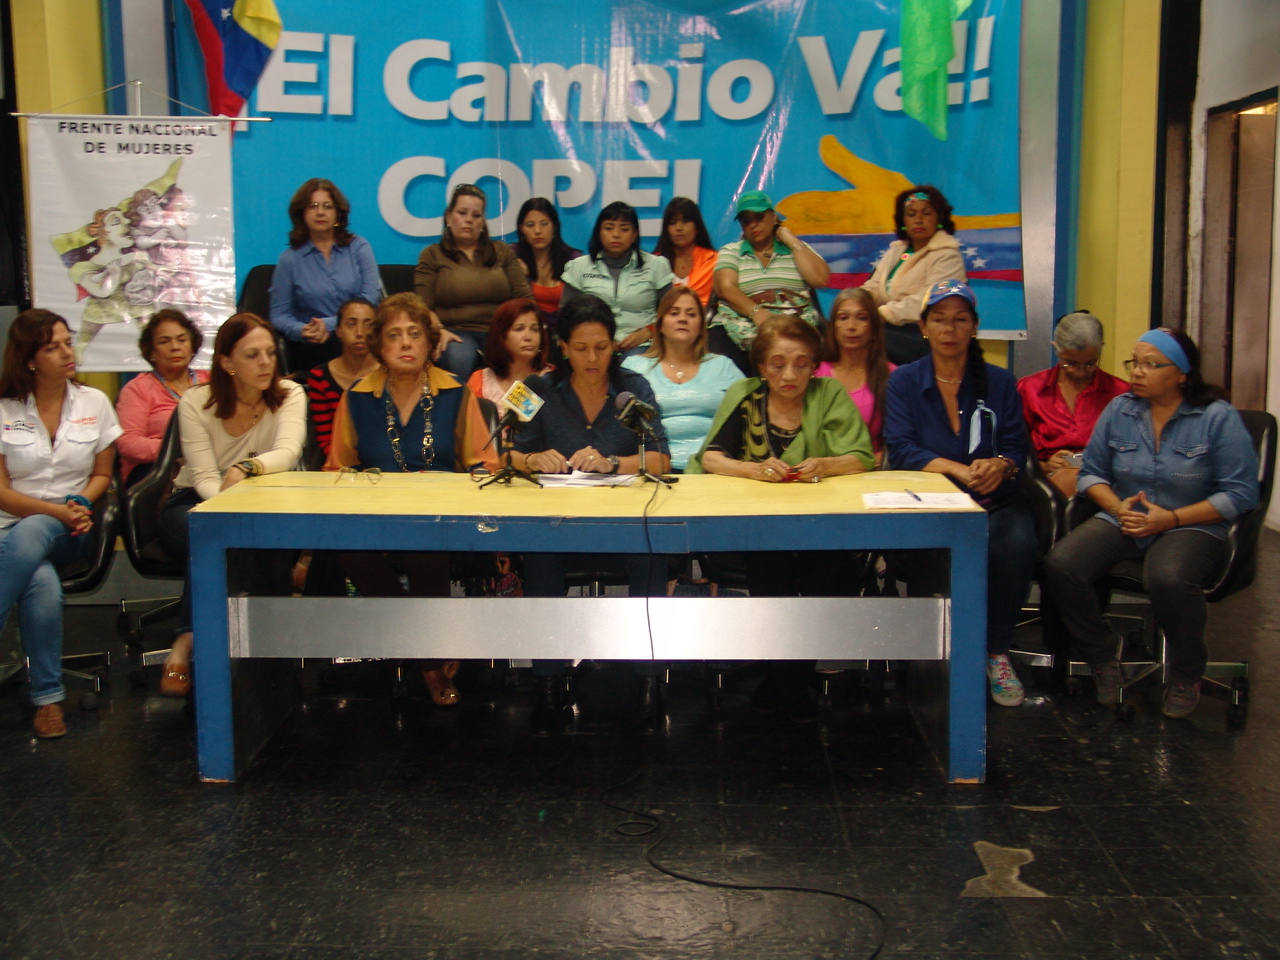 Frente Nacional de Mujeres: Somos víctimas de una fuerte represión por un Gobierno desesperado